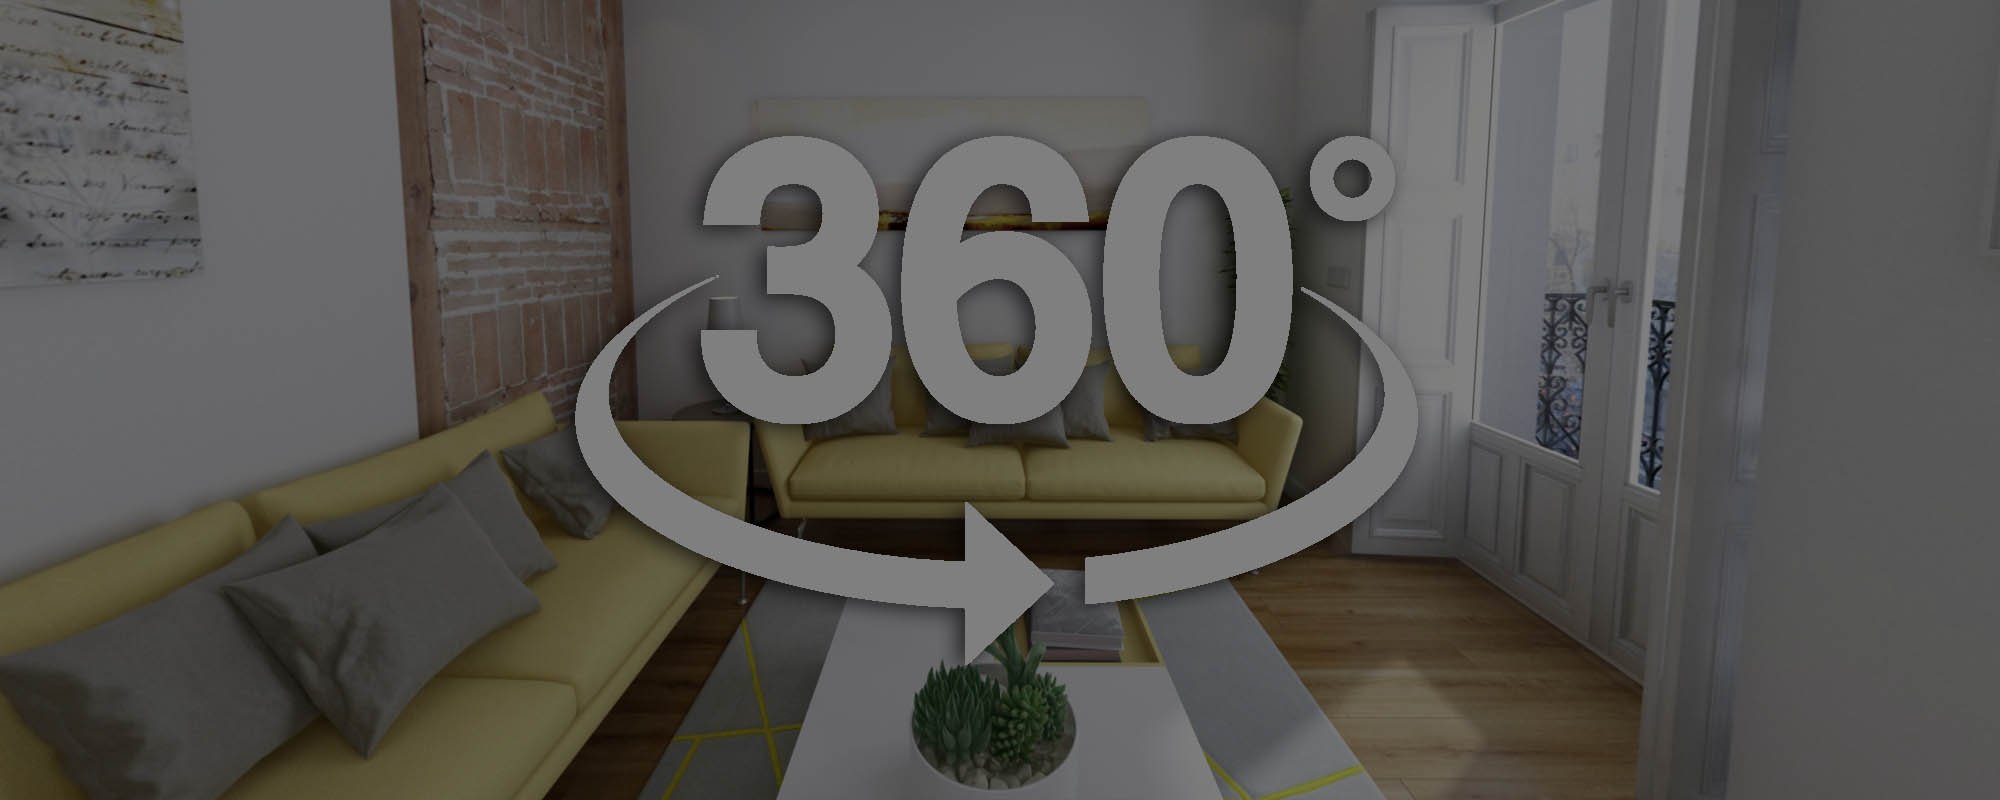 Tour virtual de una vivienda en Madrid con vistas 360º VR